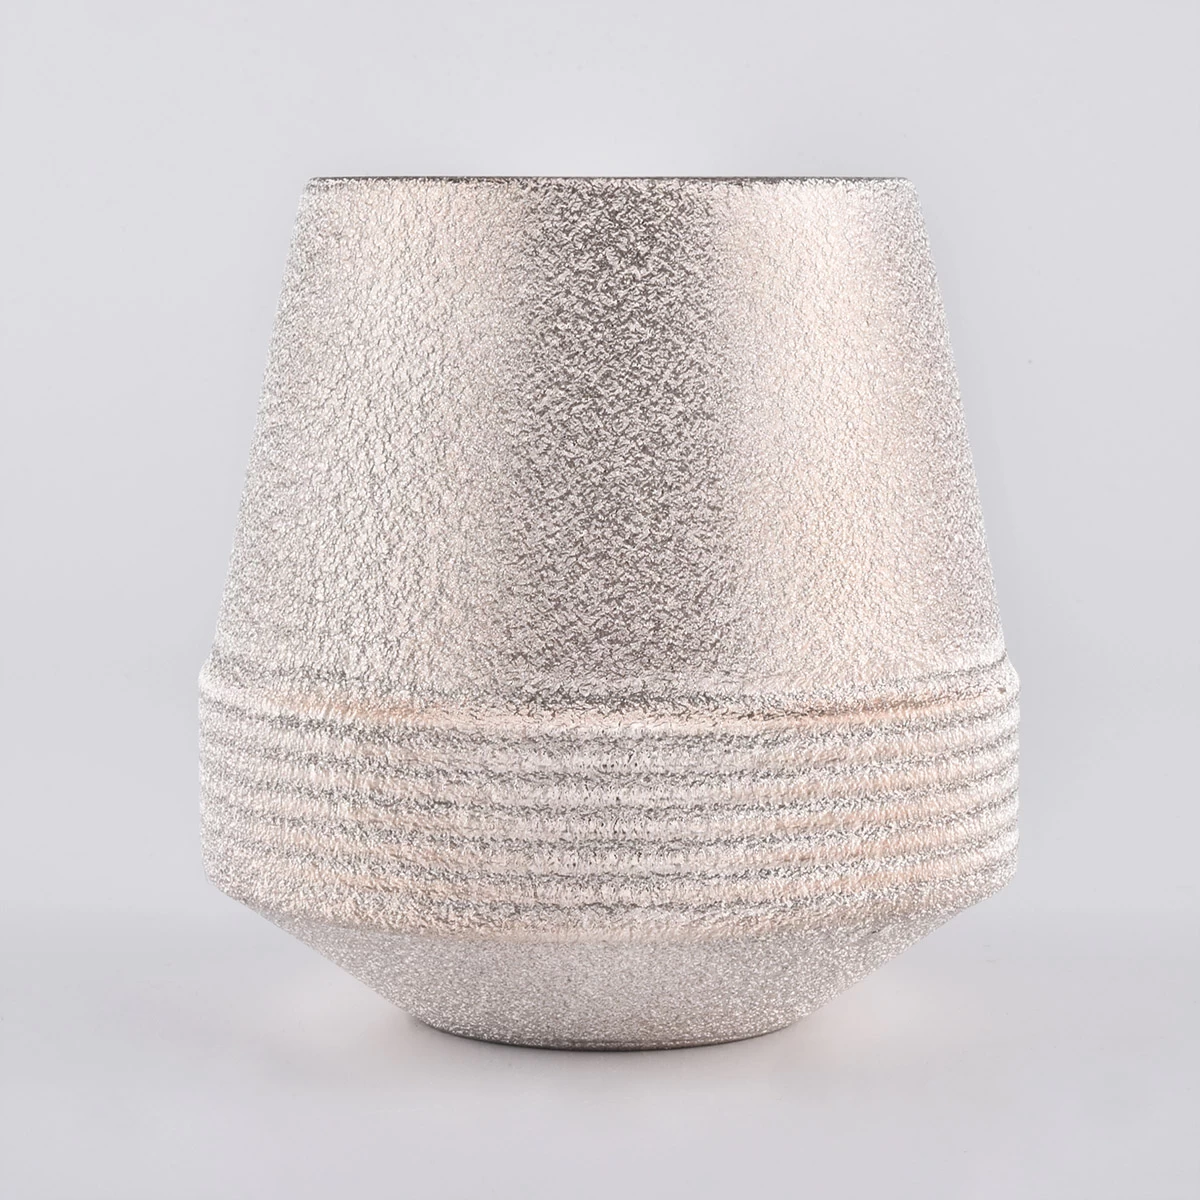 Unique Ceramic Candle Jars